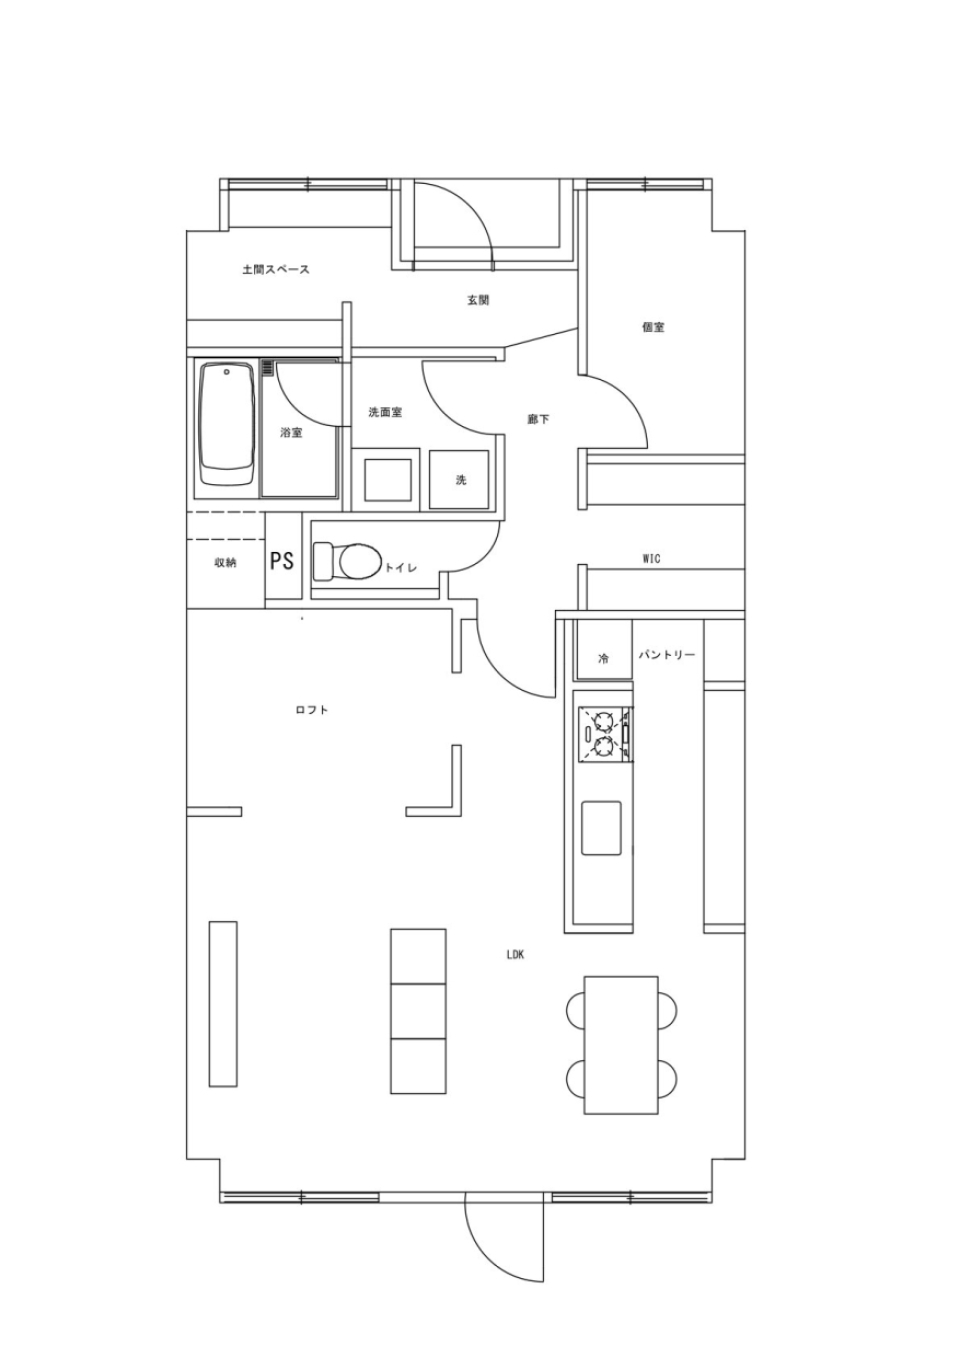 #フルリノベ　#ロフト　#ウォークイン　#現代的デザイン　なマンションの間取り図